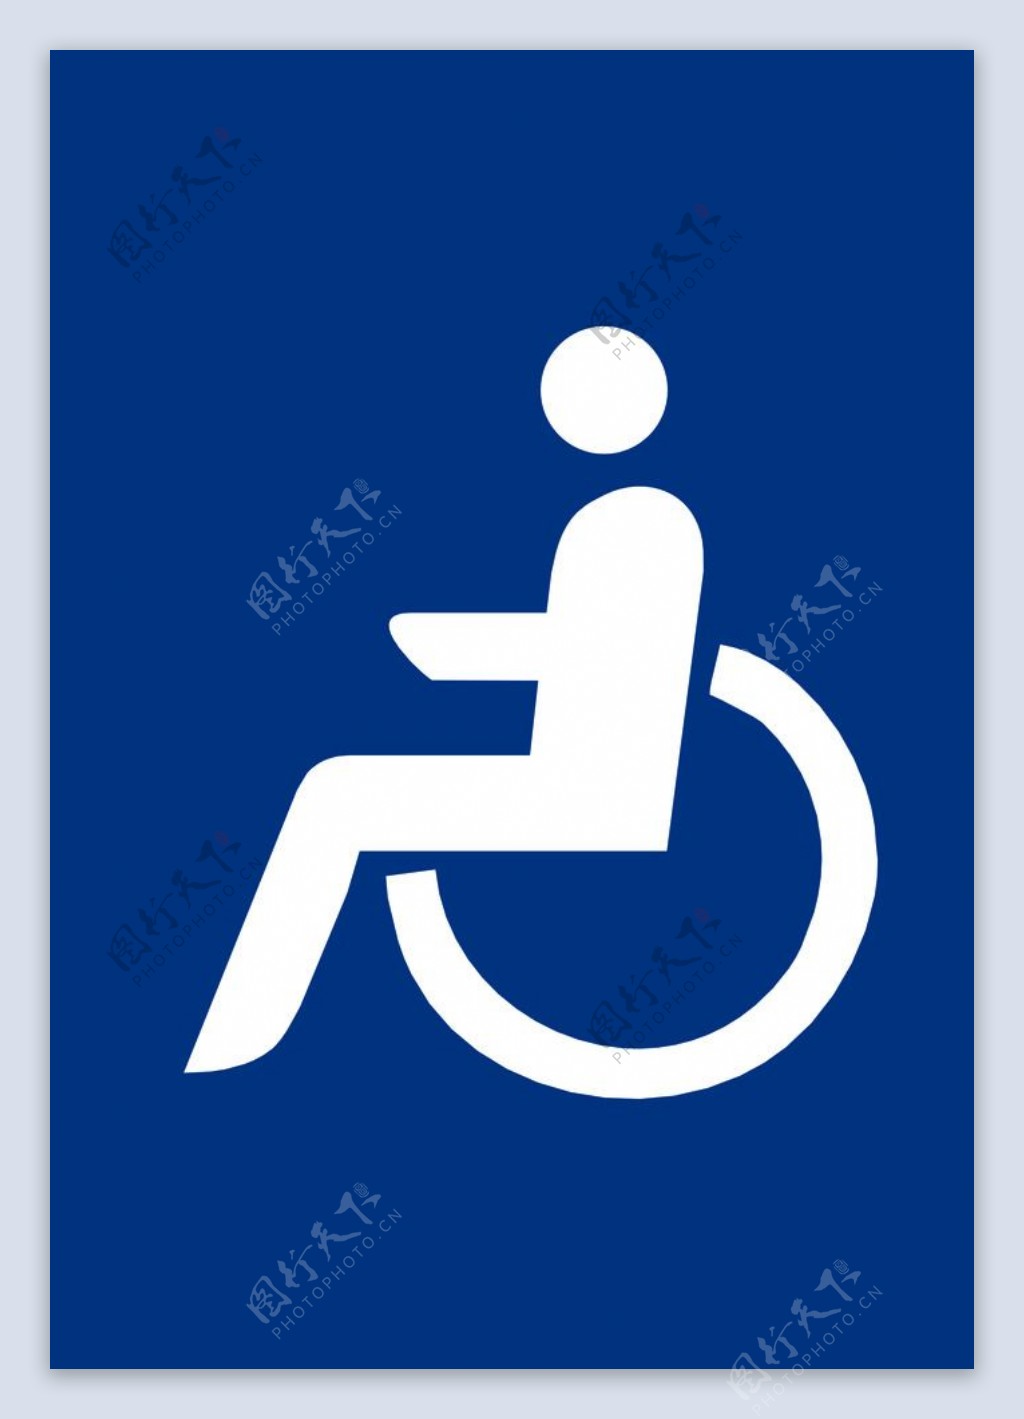 残疾人标志残疾人专用残疾人